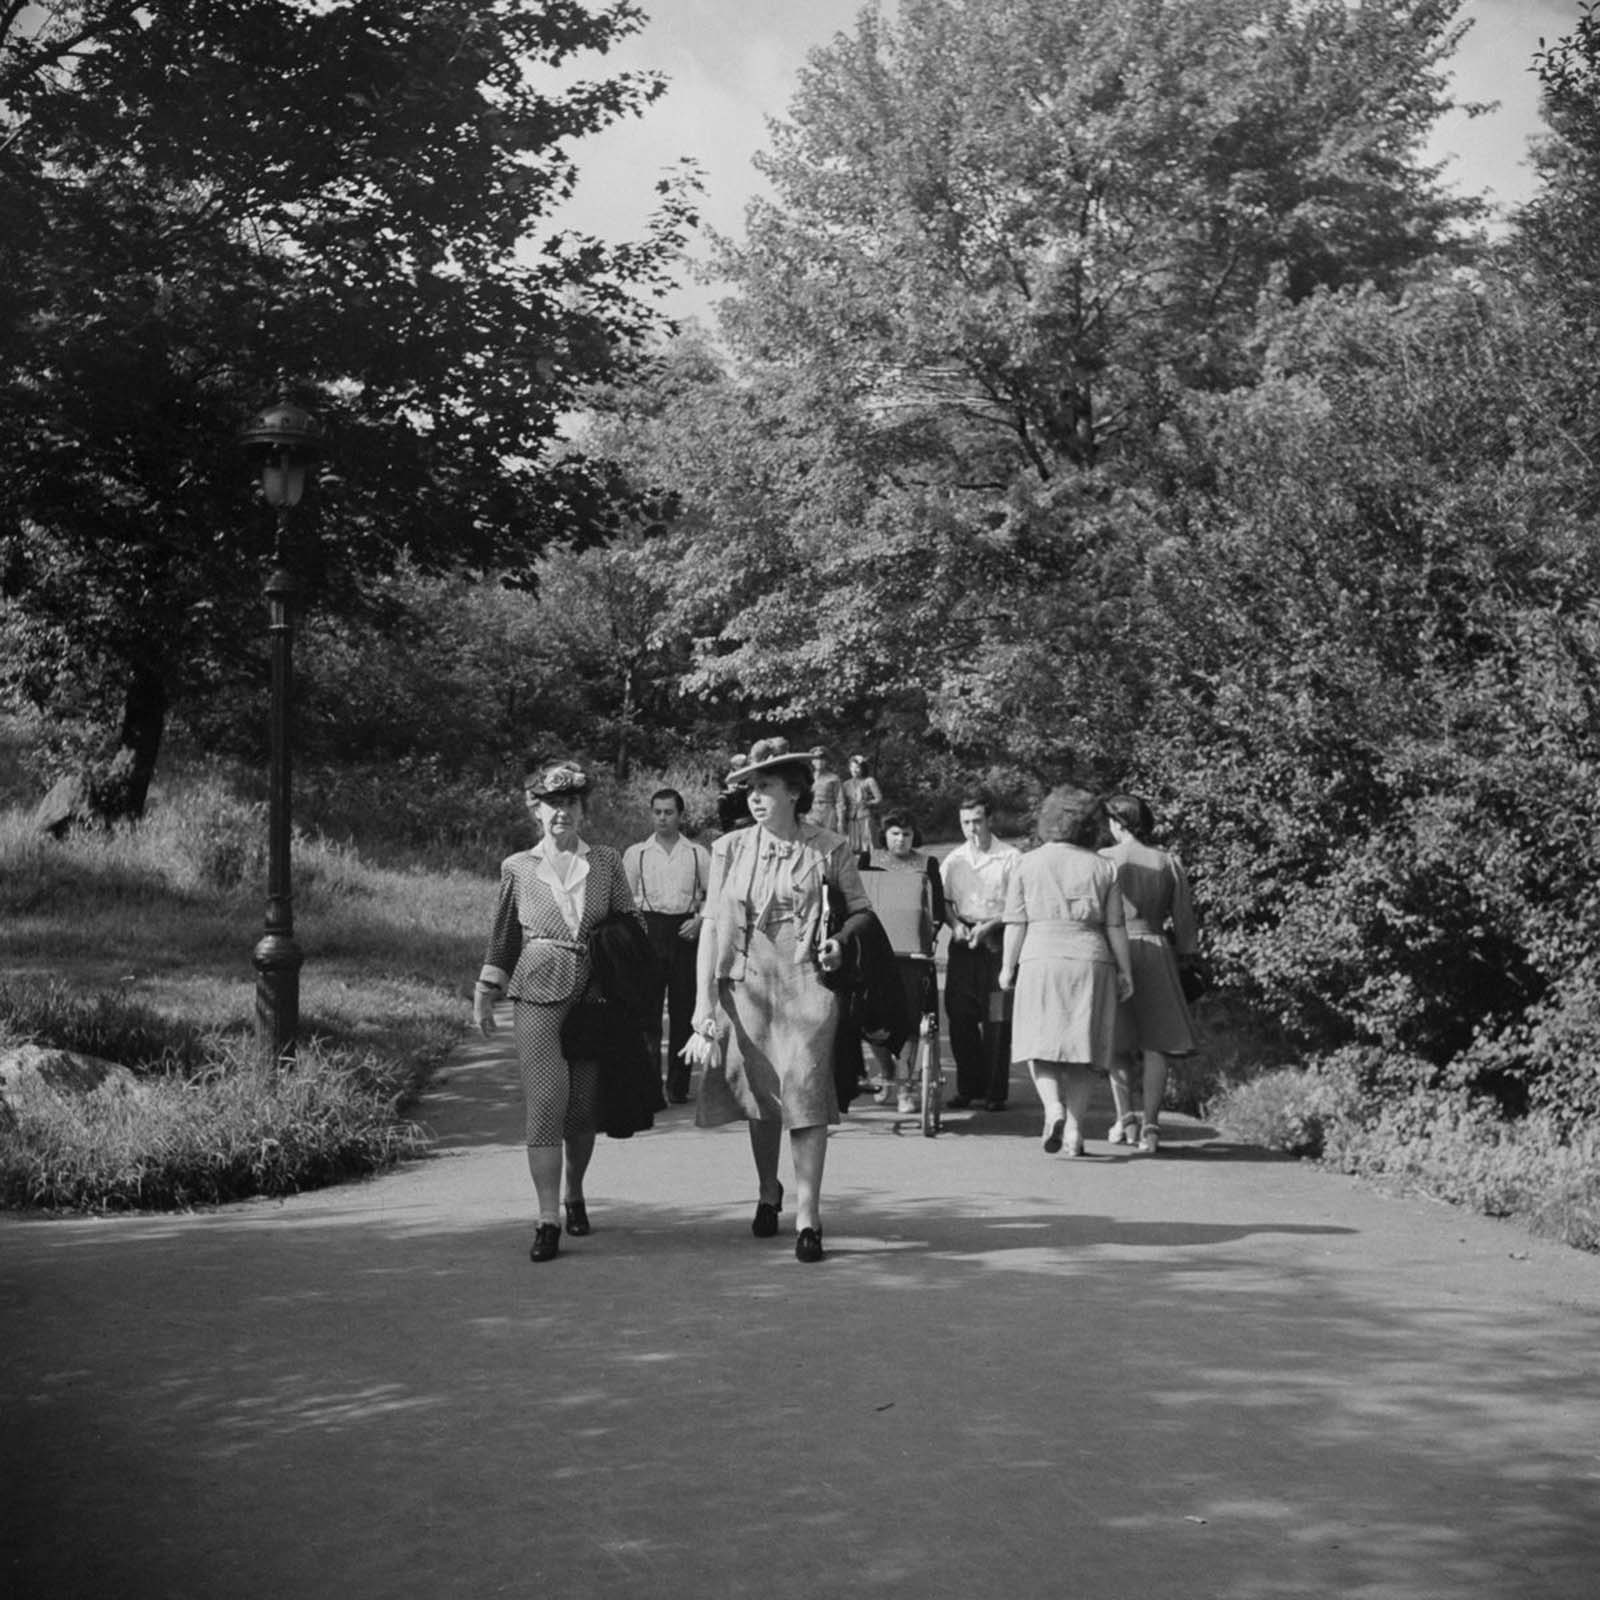 Photographies oubliées d'un dimanche de fin d'été à Central Park, 1942